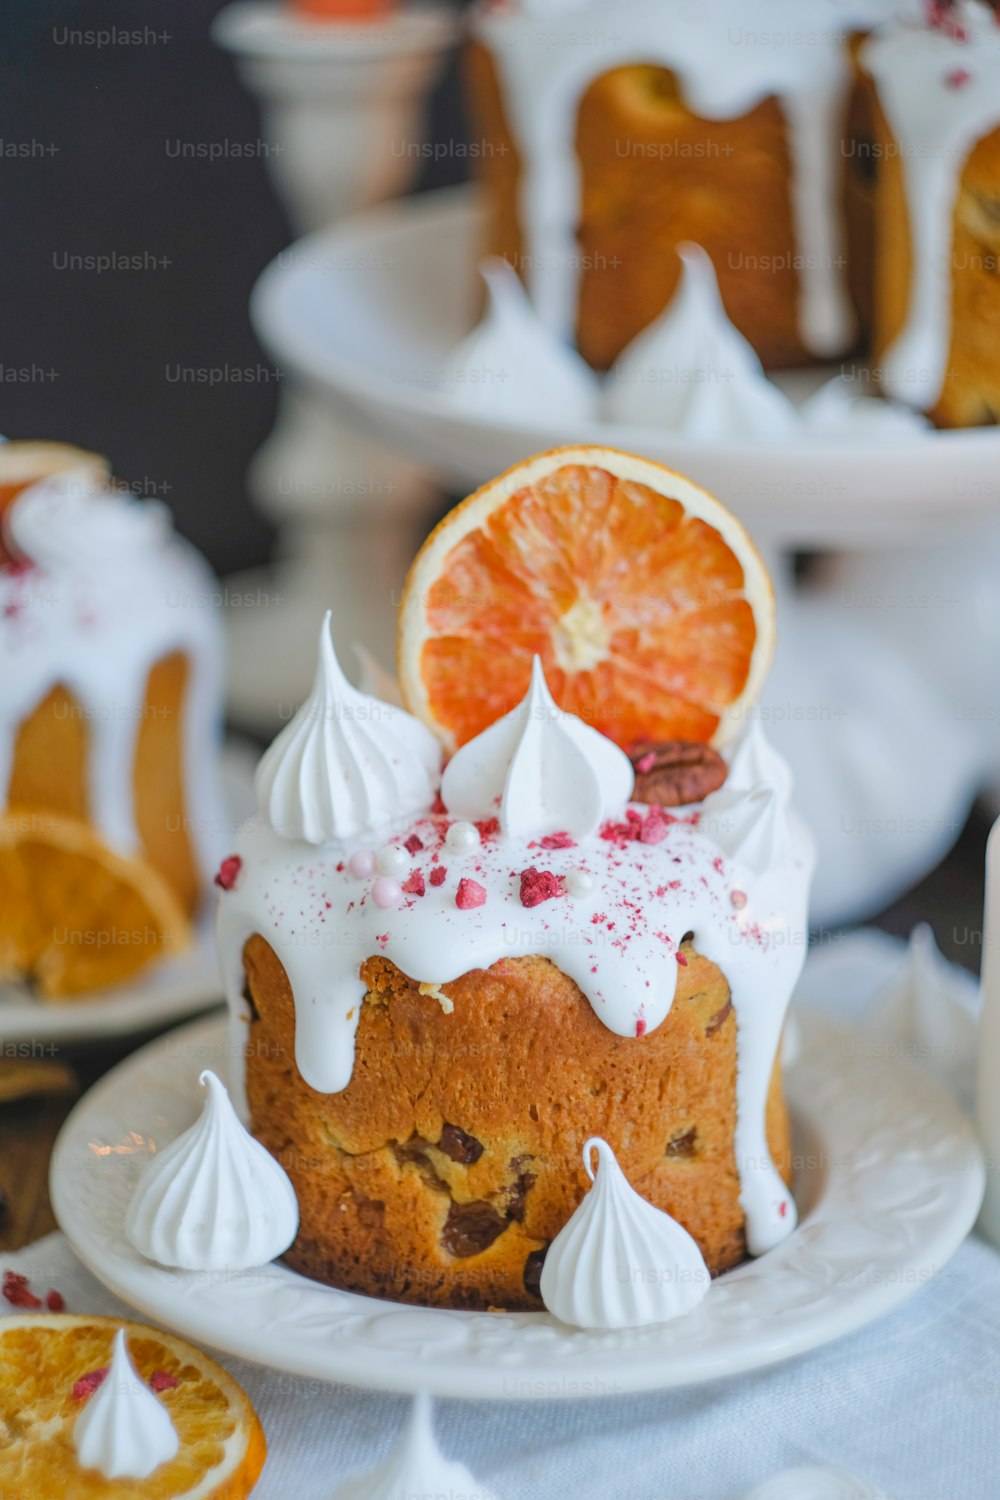 999+ fotos de pasteles caseros | Descargar imágenes gratis en Unsplash